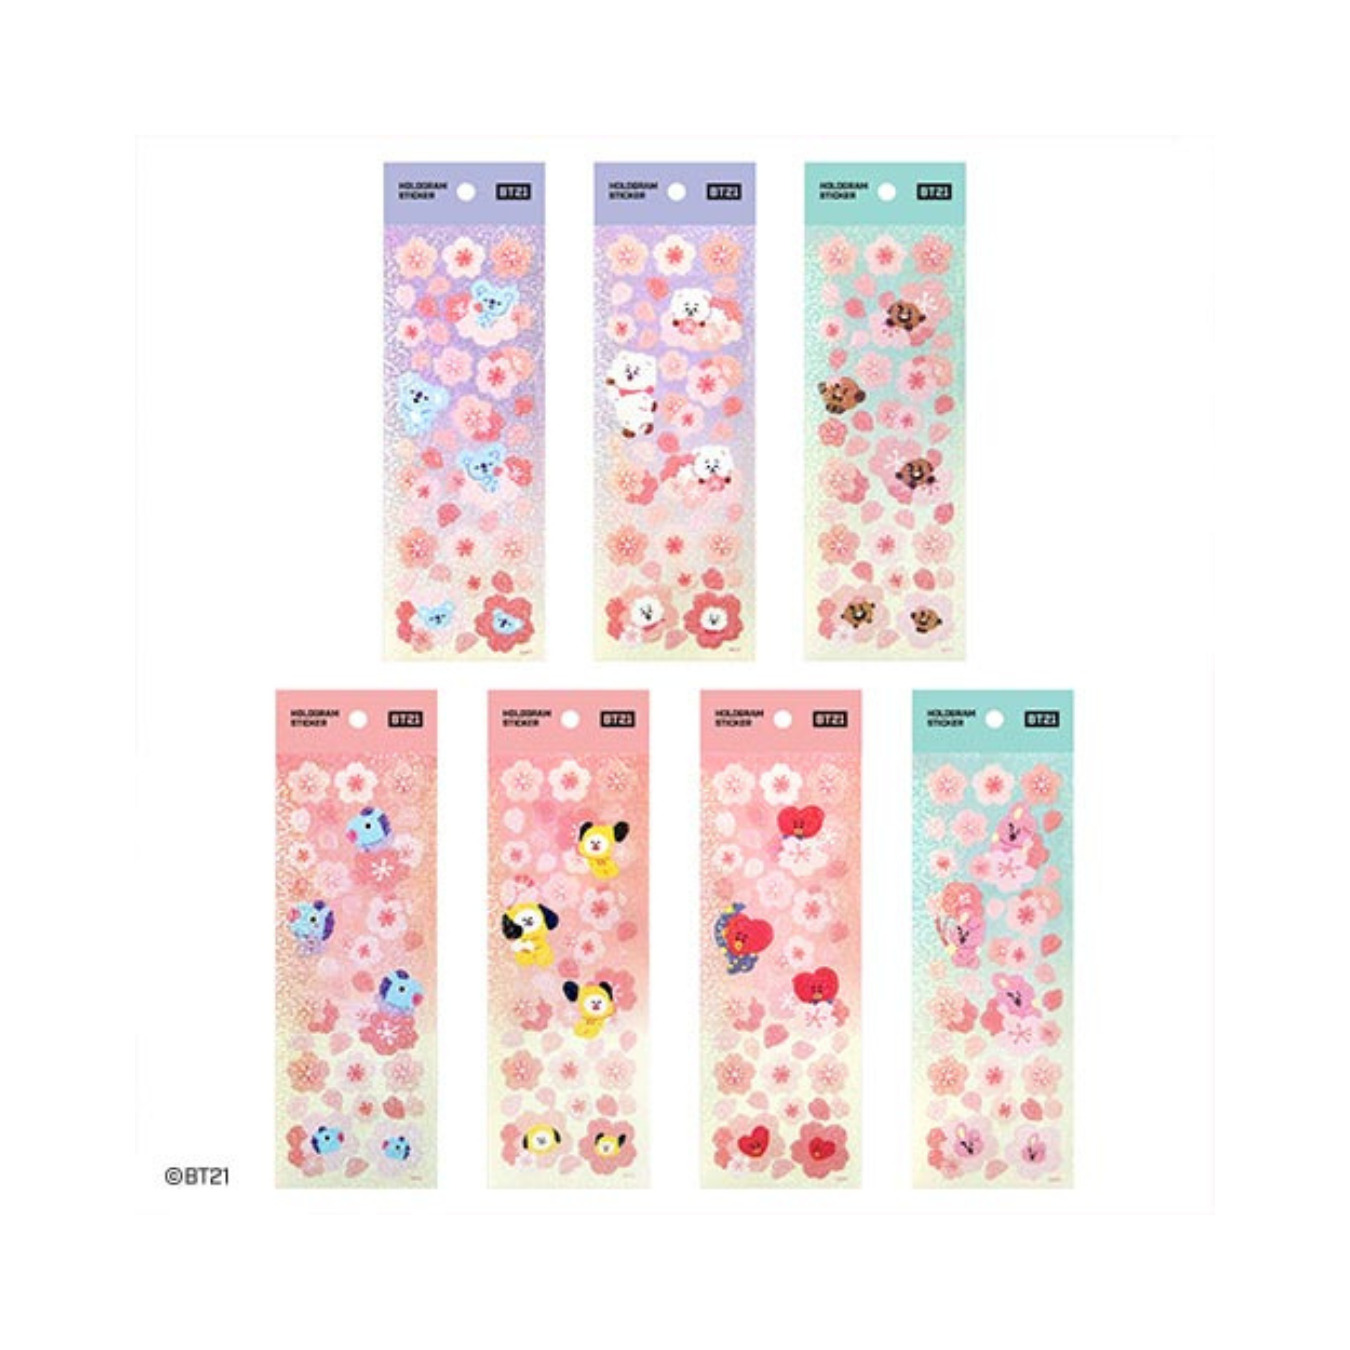 BTS (방탄소년단) - BT21 Cherry Blossom Hologram Sticker